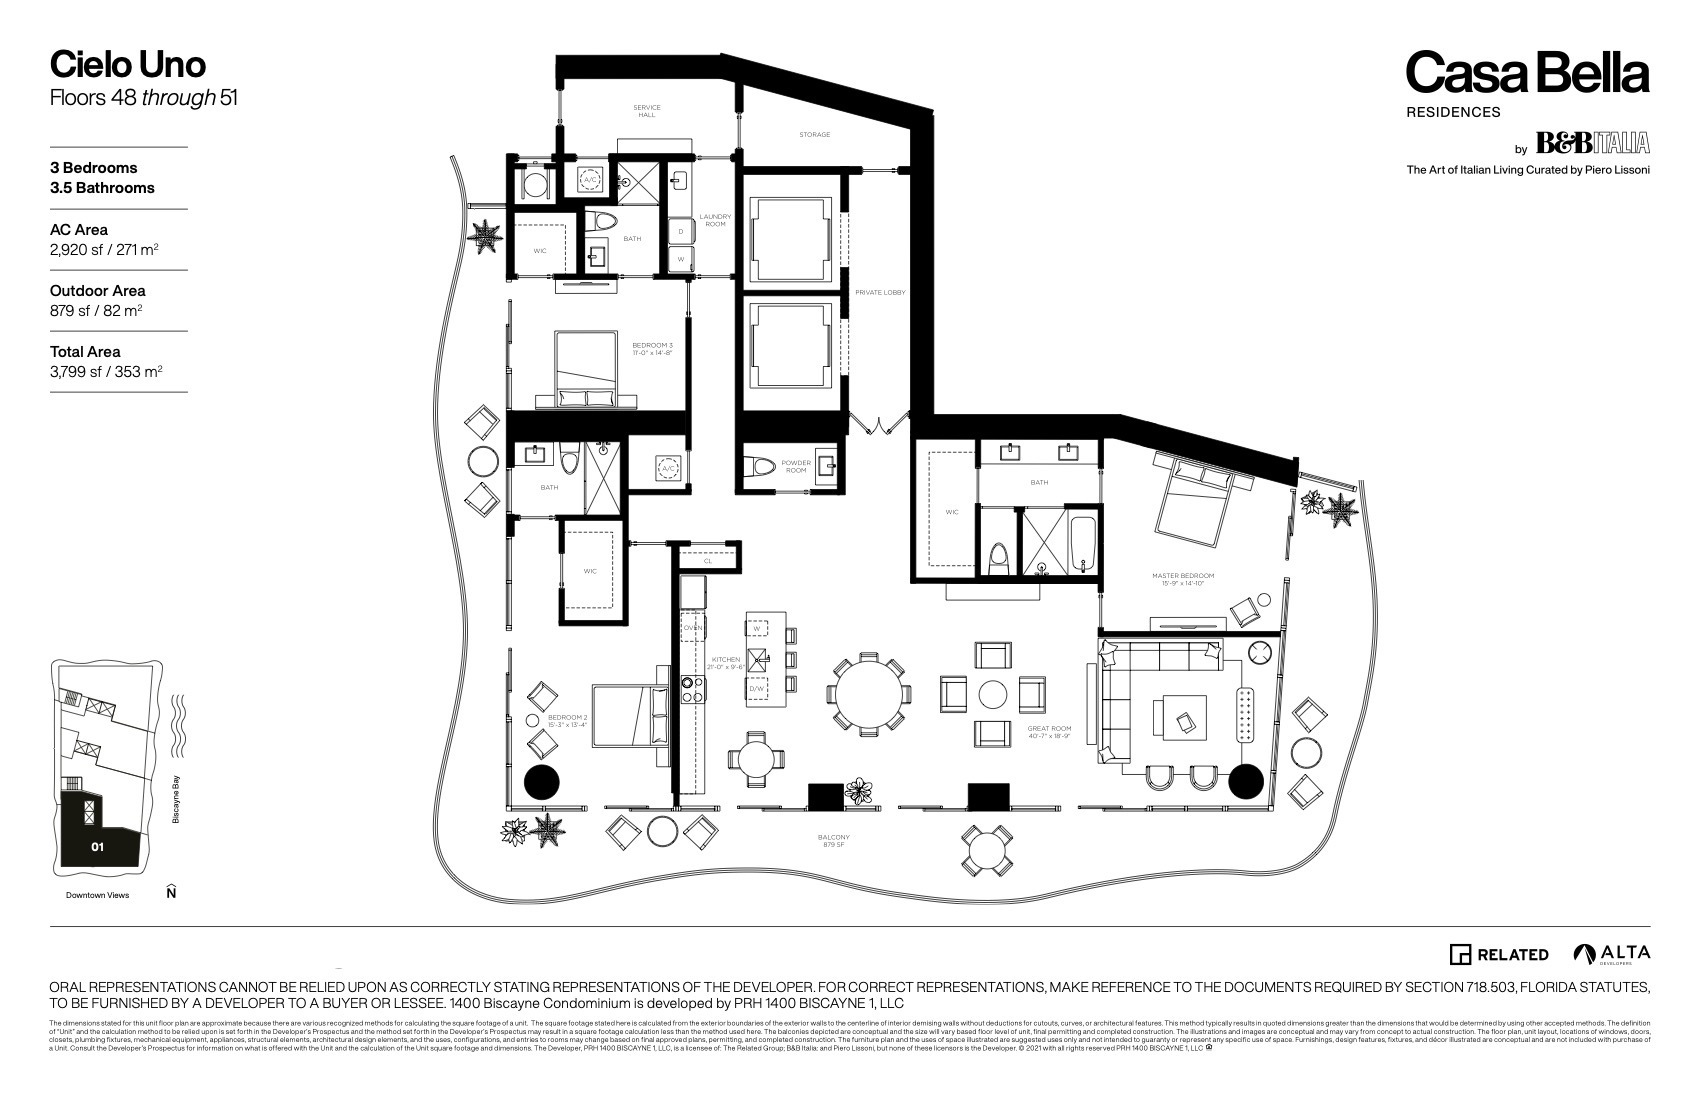 Floor Plan for Casa Bella Downtown Miami Floorplans, Cielo Uno